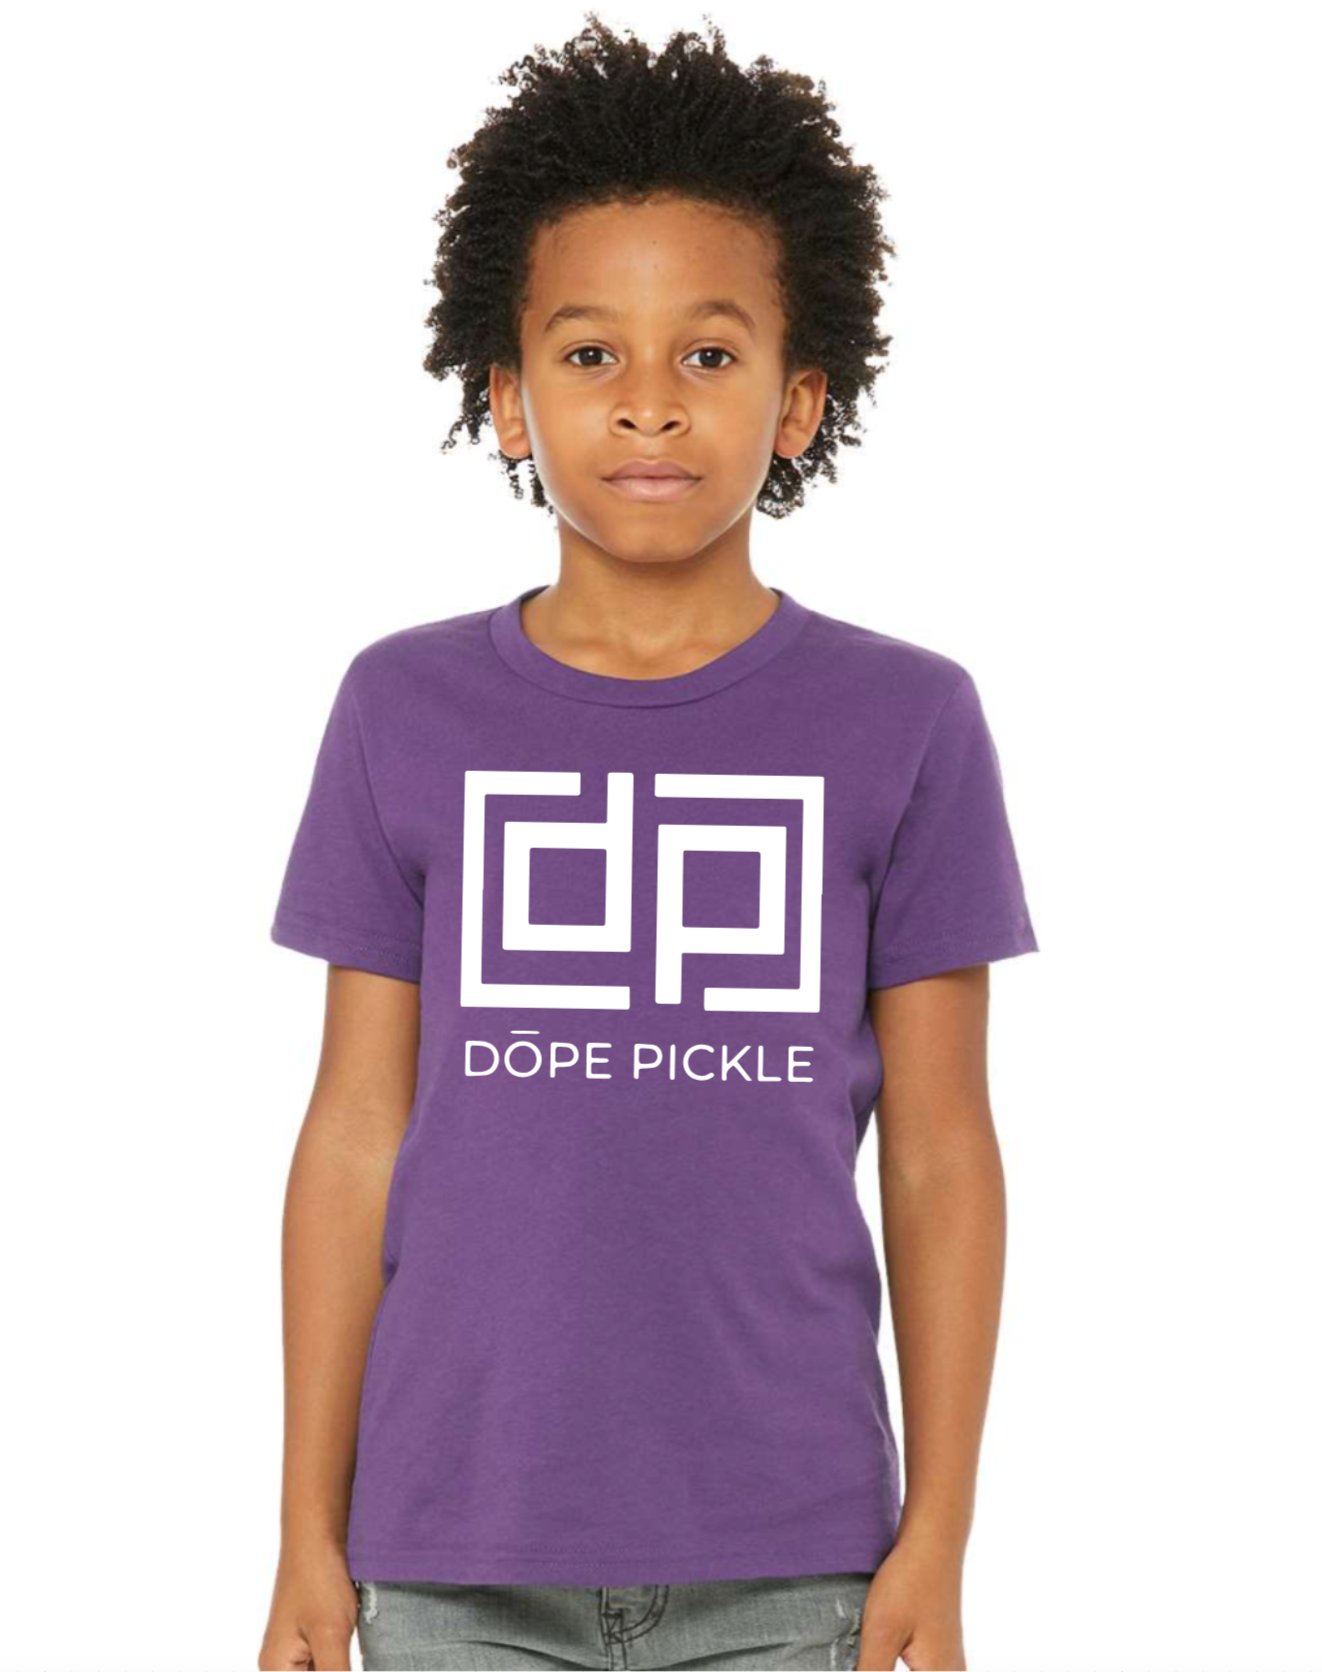 Dope Pickle YOUTH Short Sleeve Shirt - Large Logo